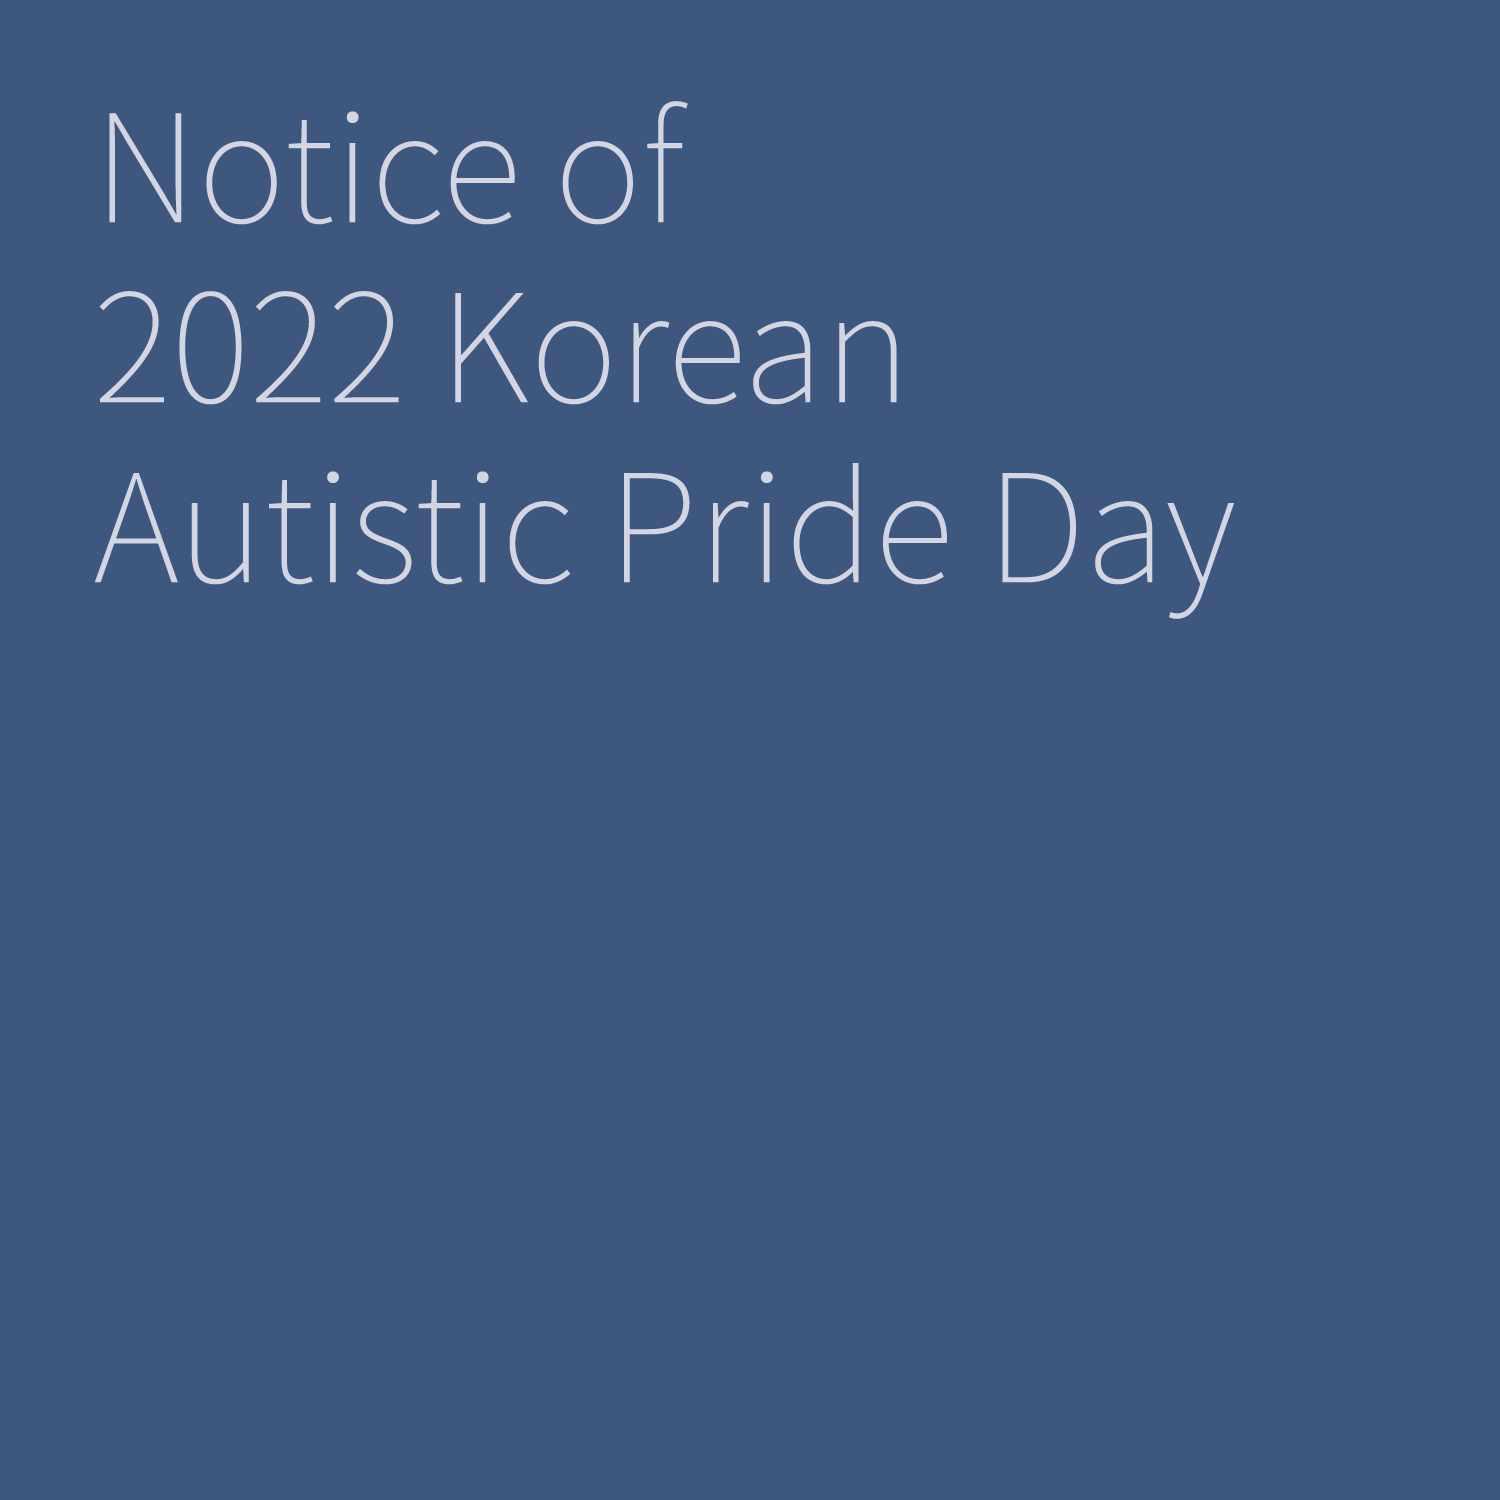 [cover]
Notice of
2022 Korean
Autistic Pride Day